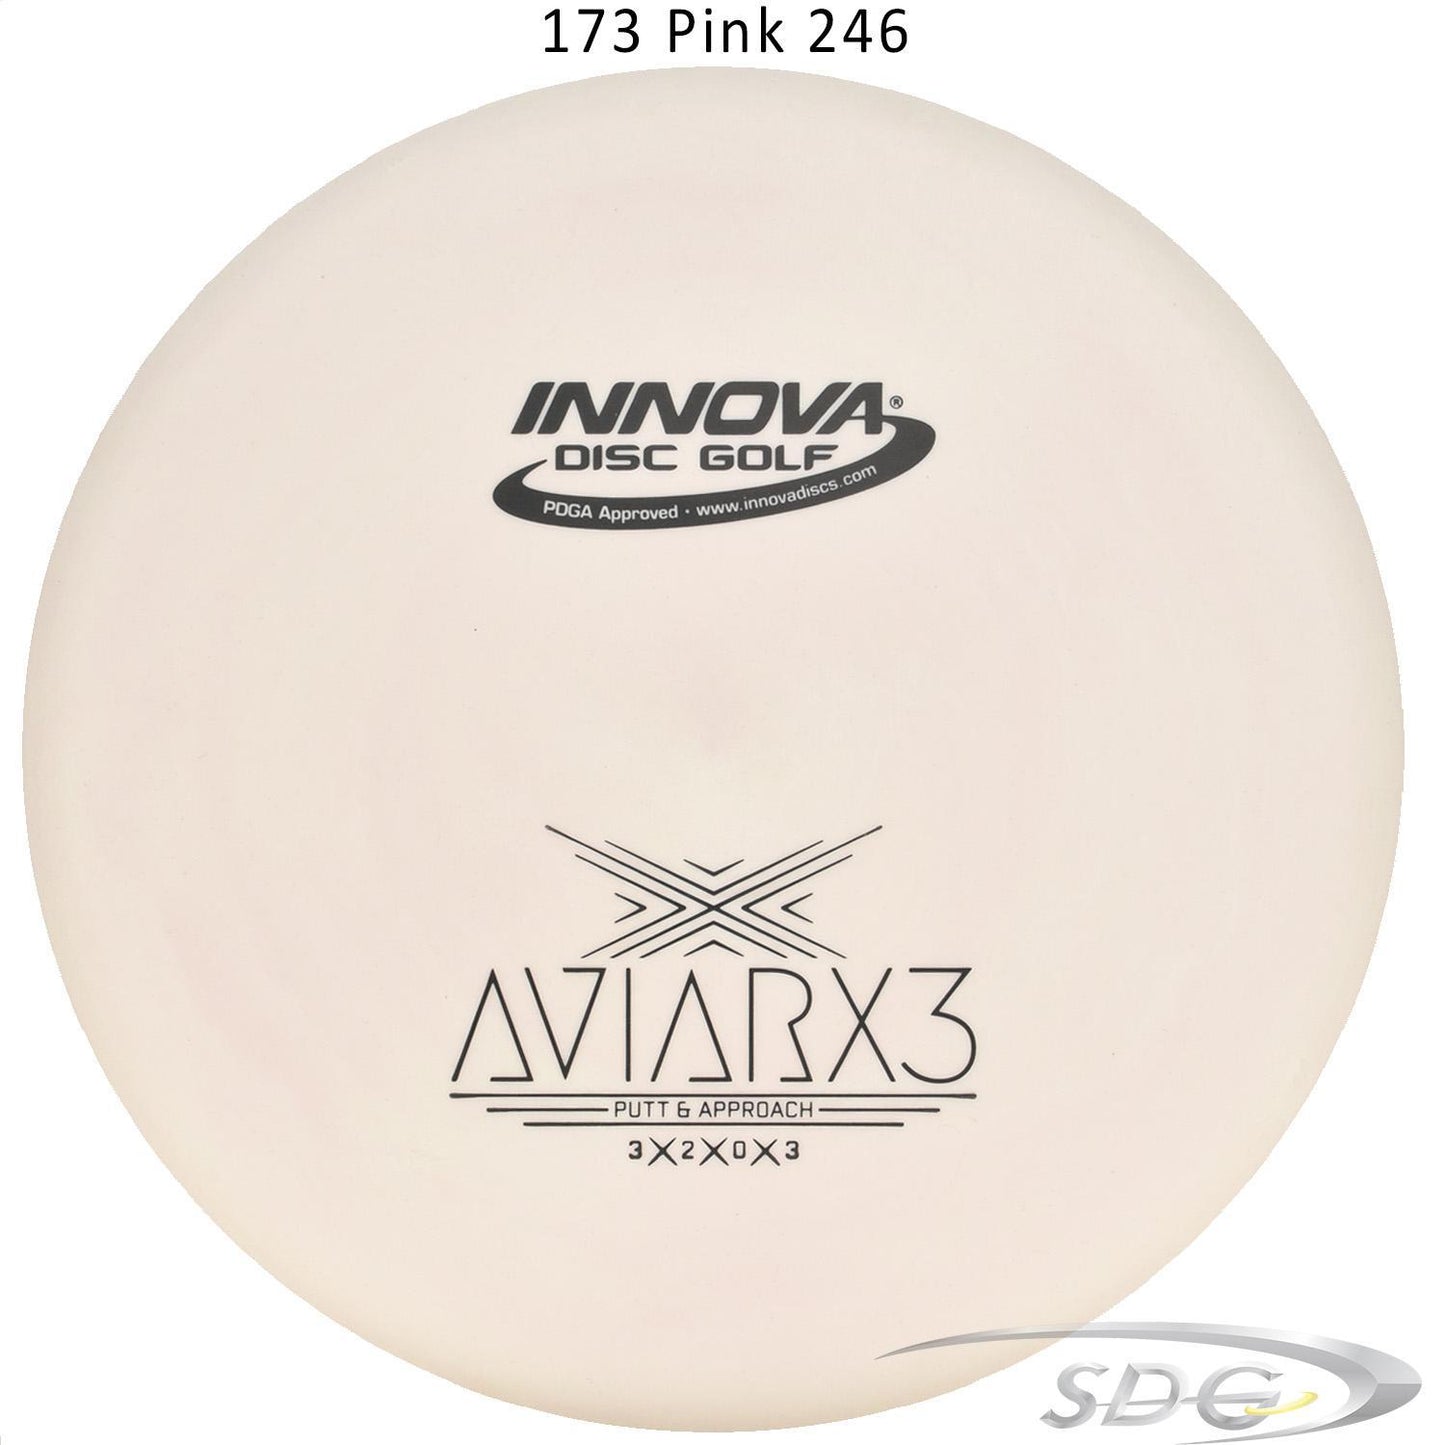 innova-dx-aviarx3-disc-golf-putter 173 Pink 246 